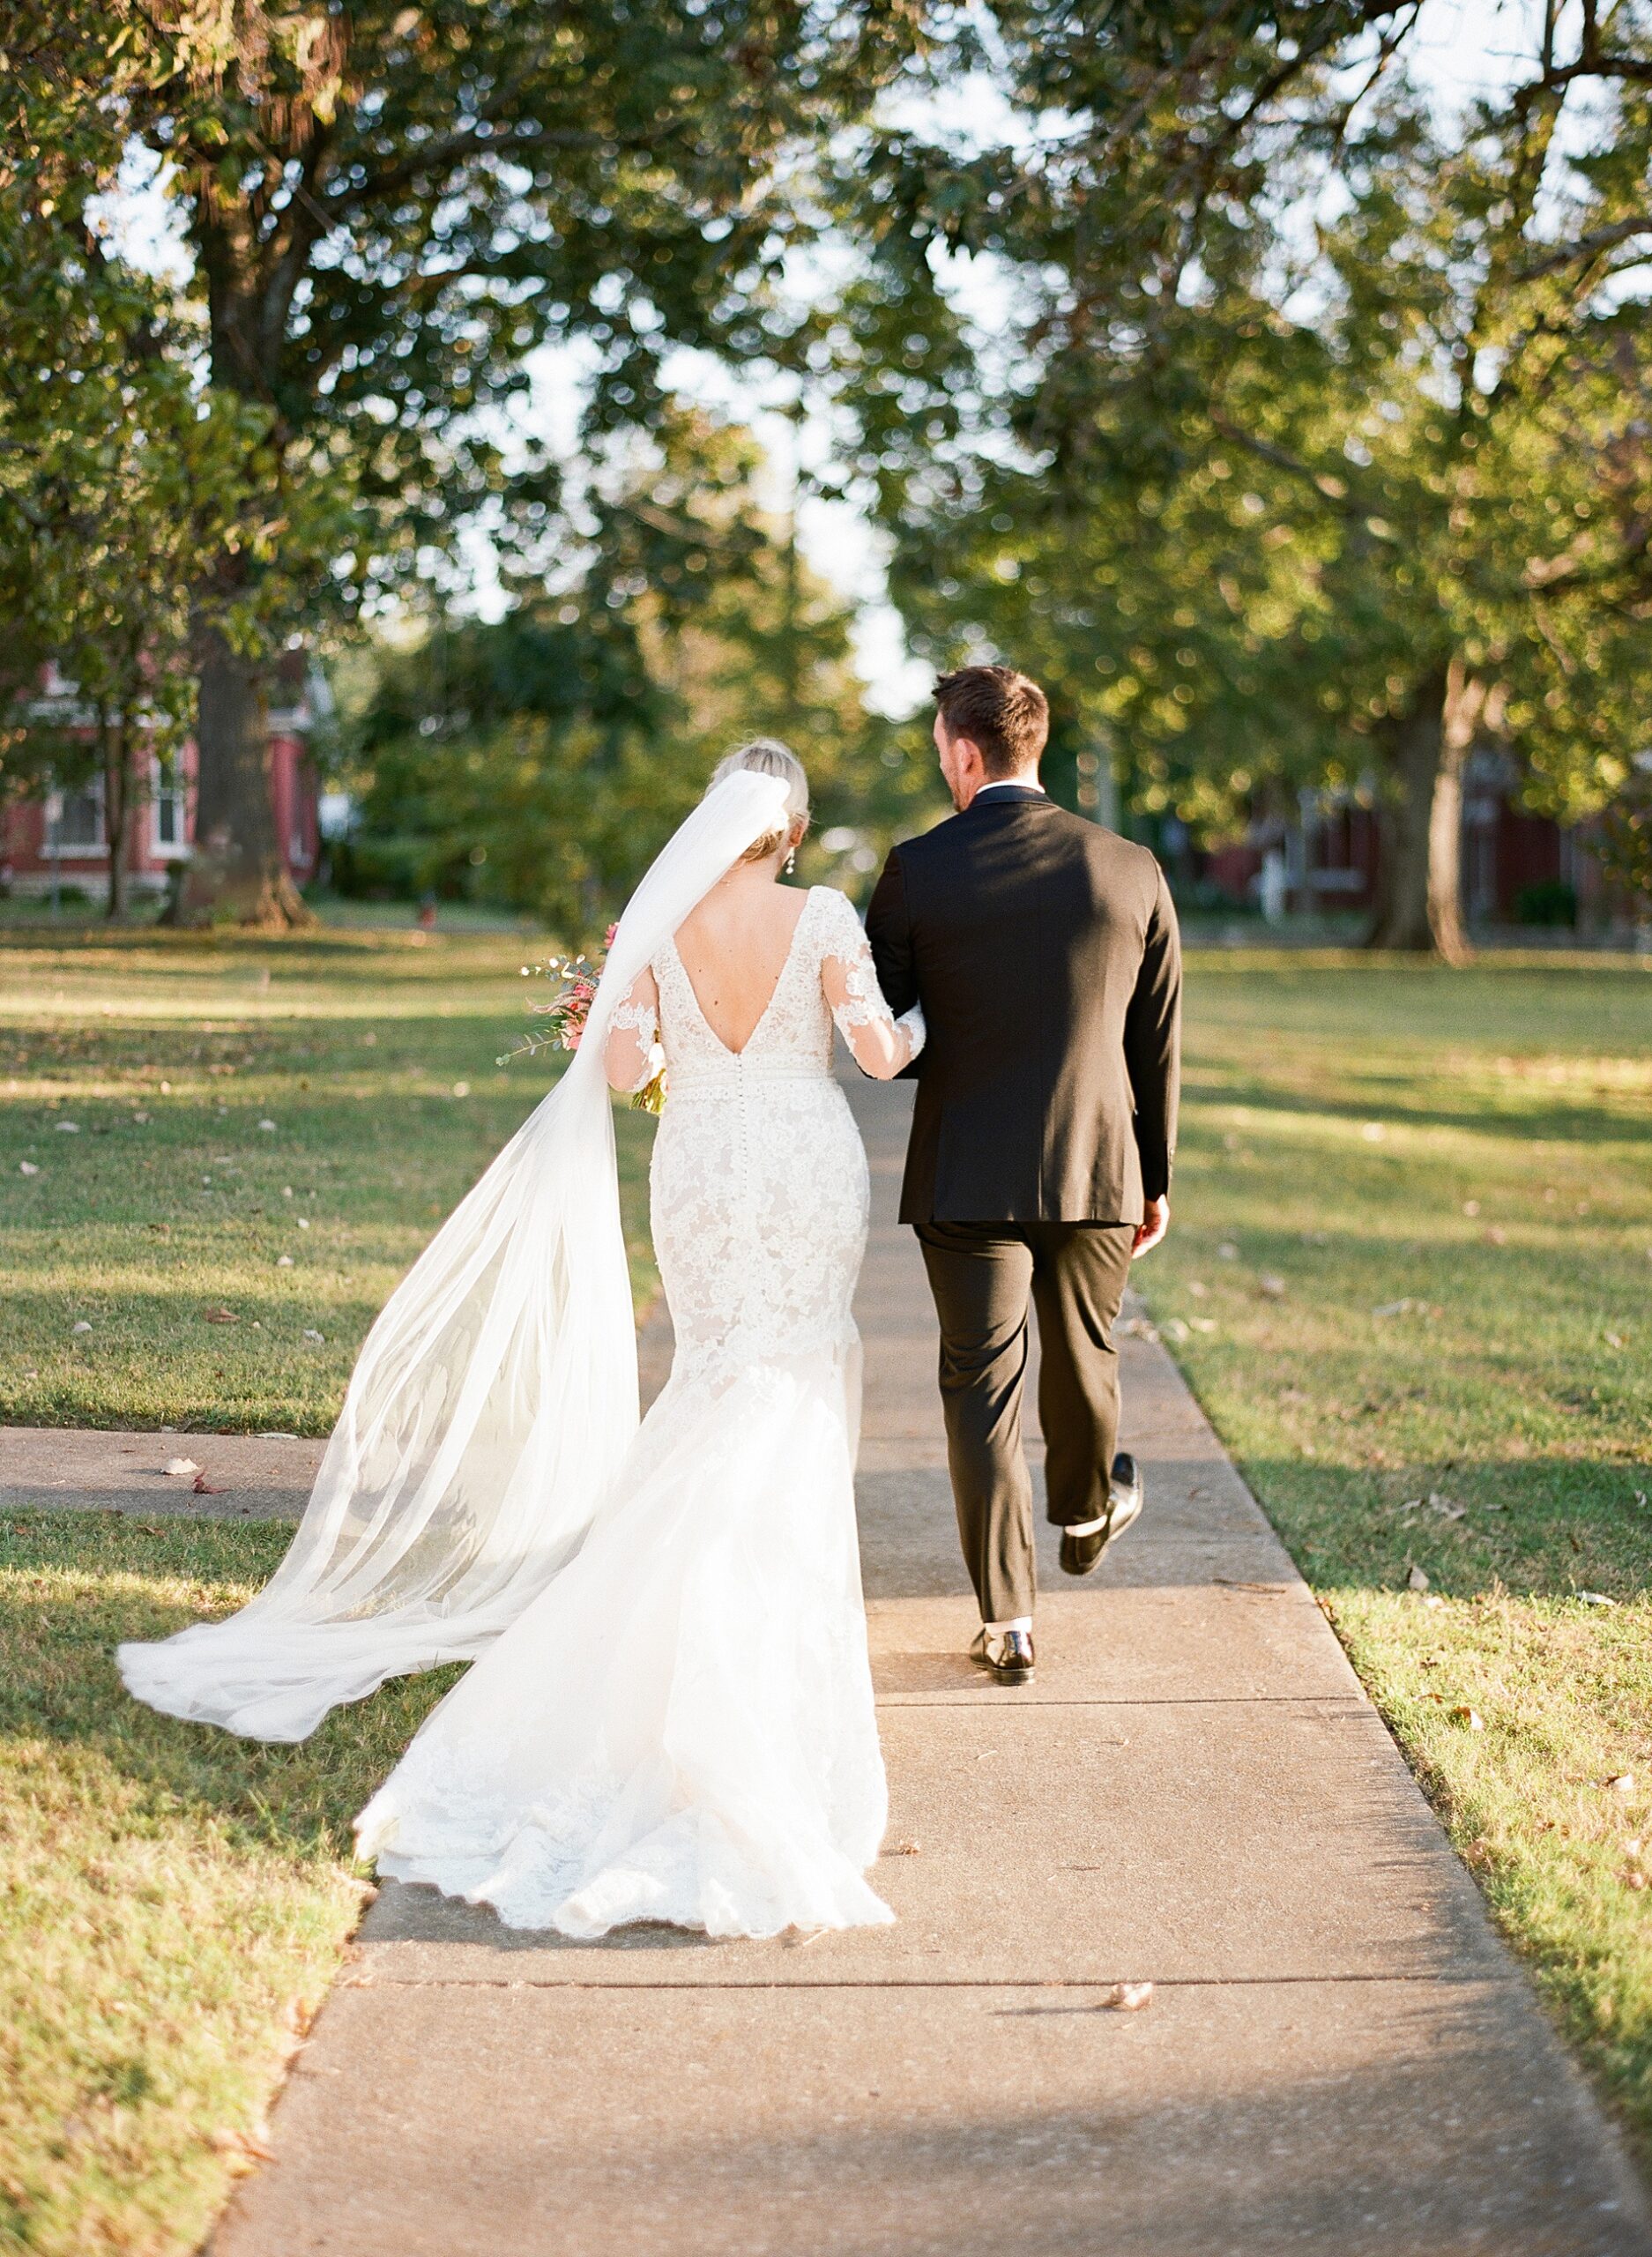 Nashville wedding photographer and Marriage advocate, Kera Photography creates self-led couples workbook